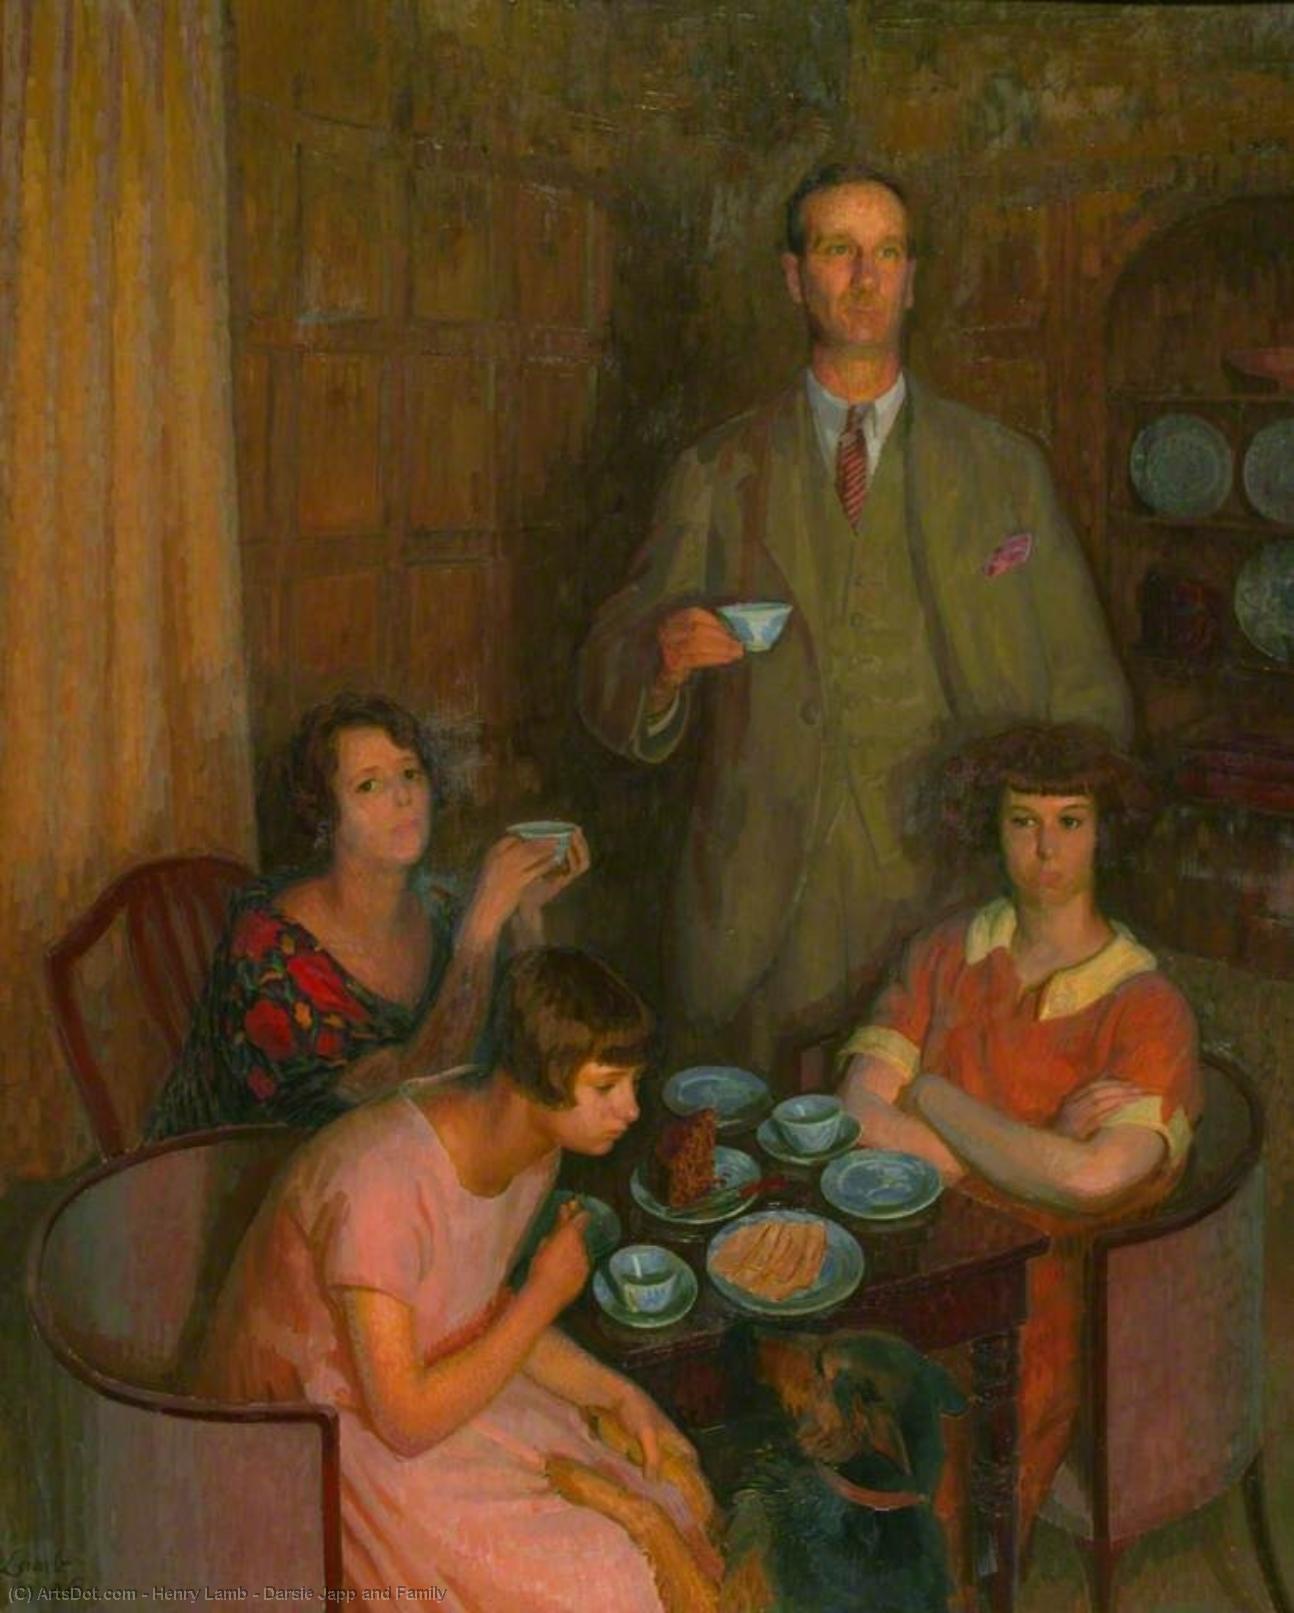 WikiOO.org - دایره المعارف هنرهای زیبا - نقاشی، آثار هنری Henry Lamb - Darsie Japp and Family